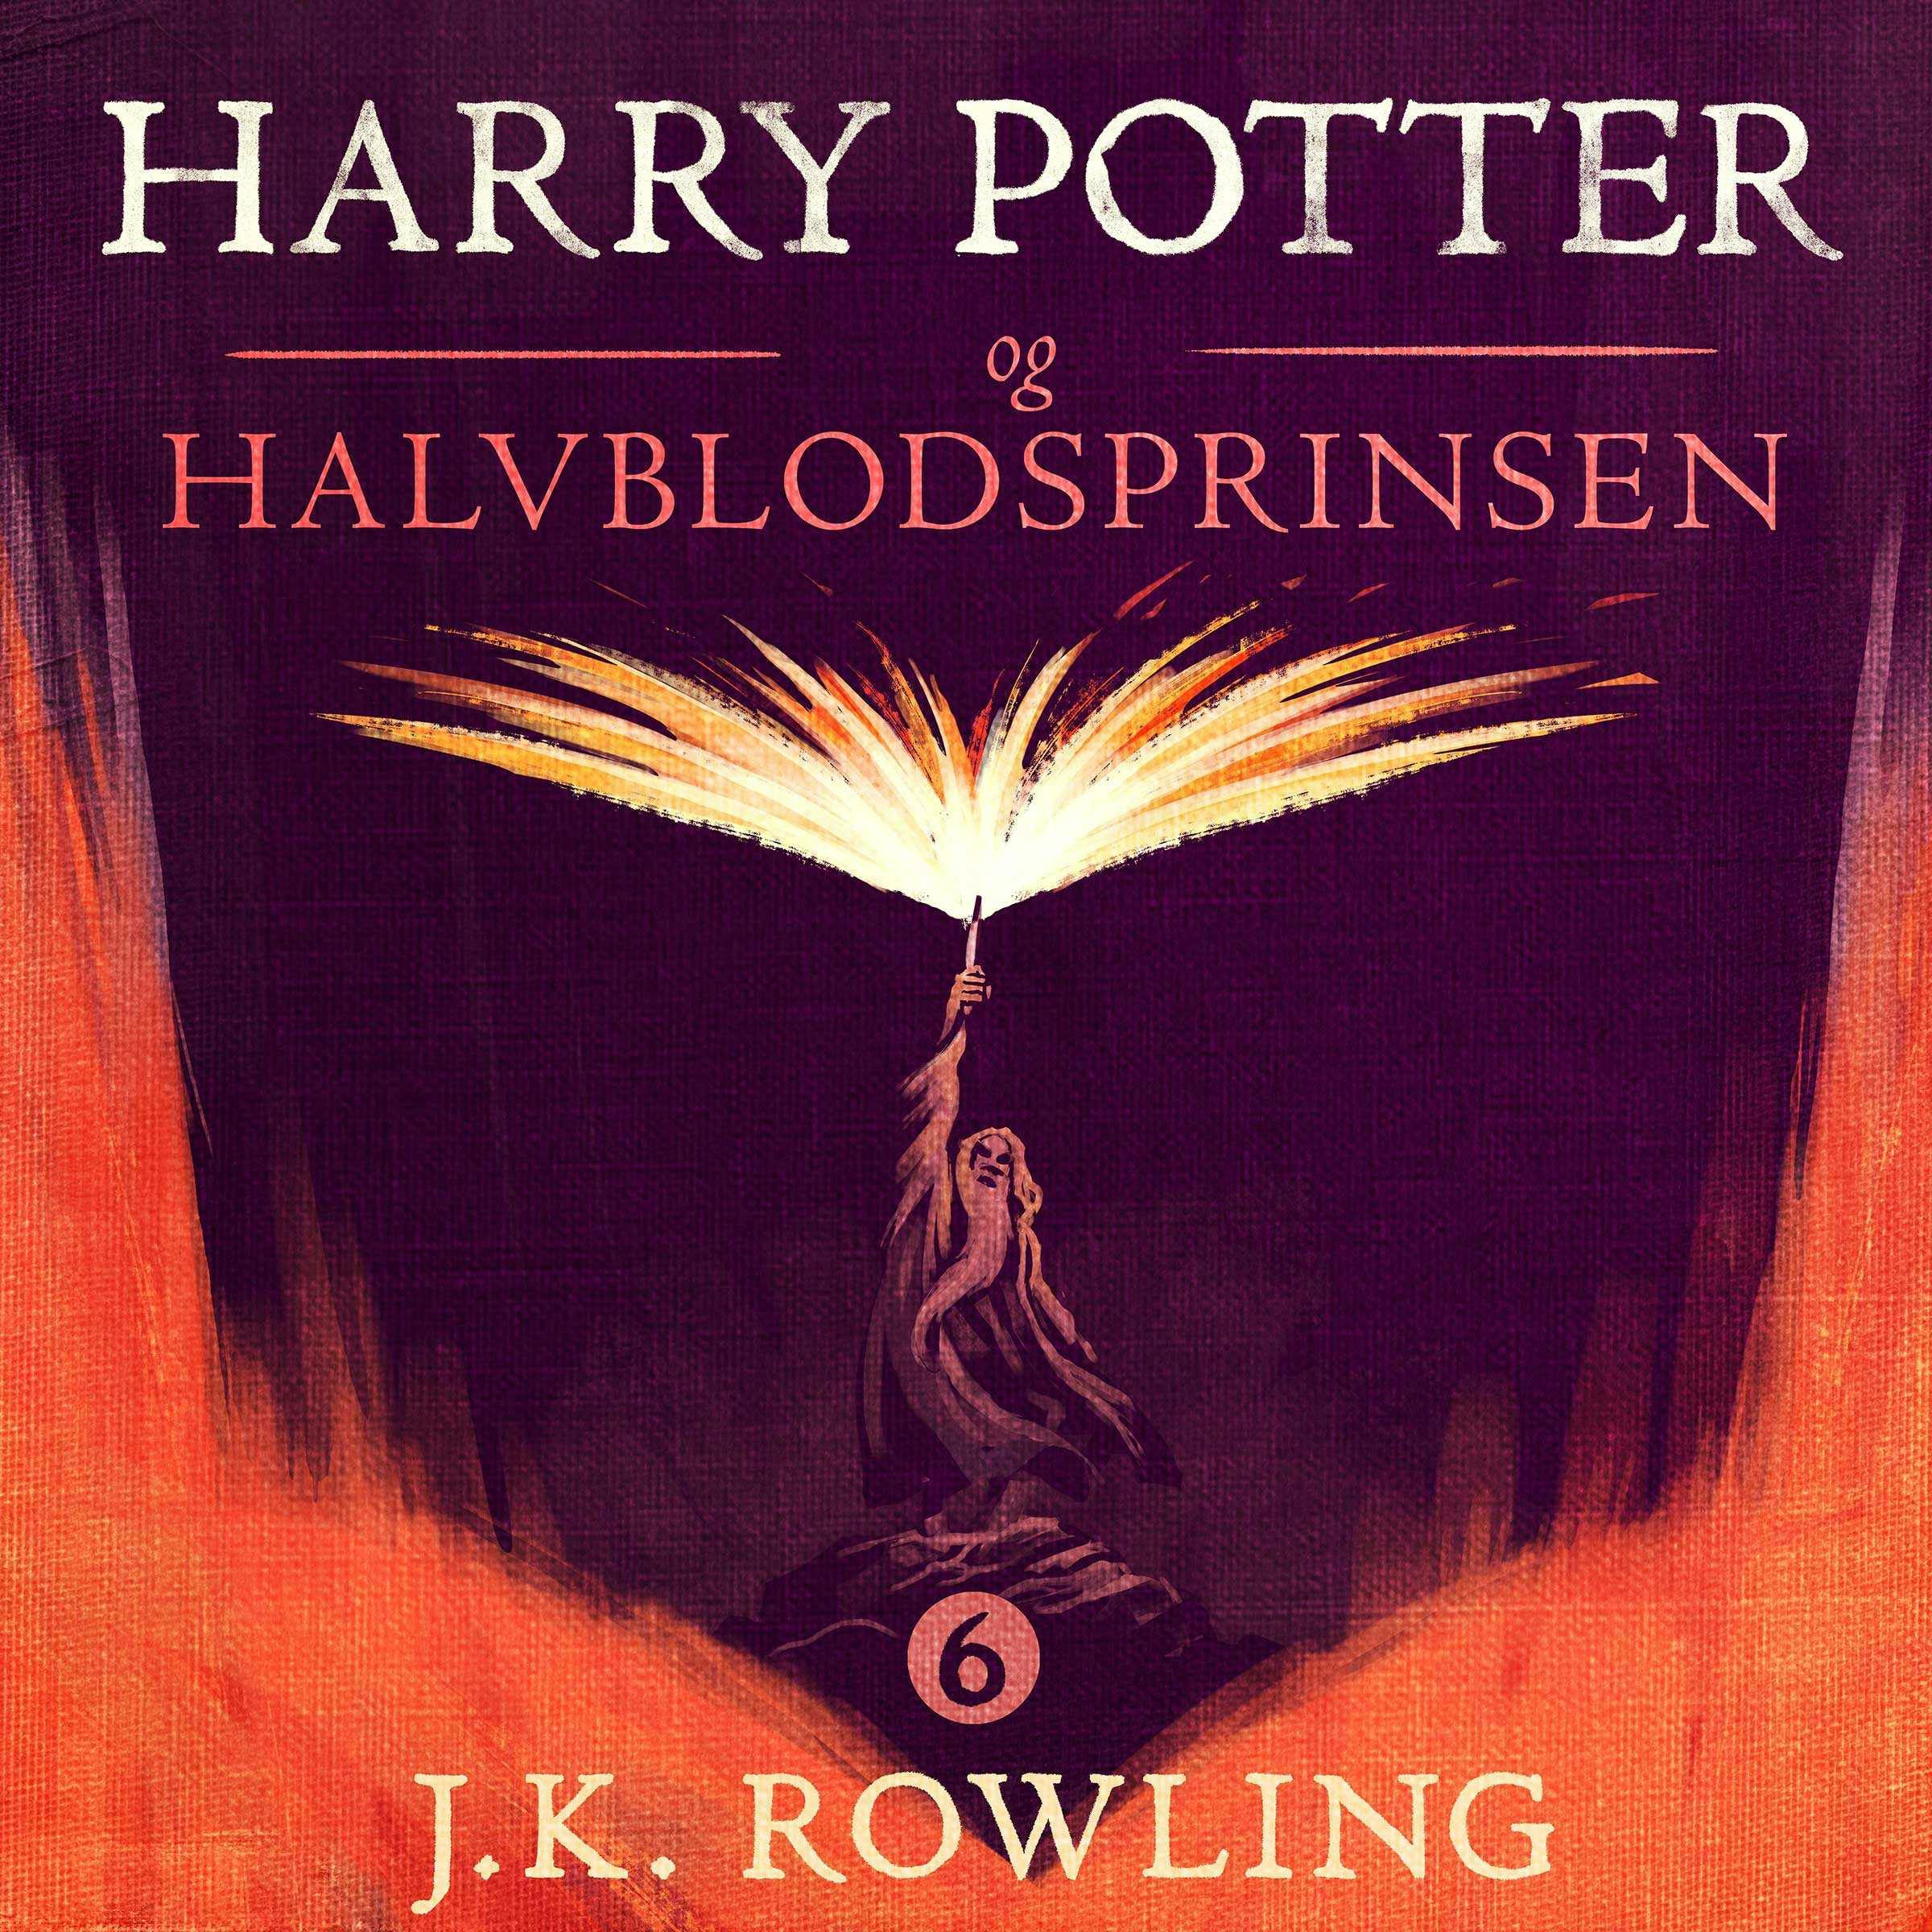 Harry Potter og Halvblodsprinsen - J.K. Rowling